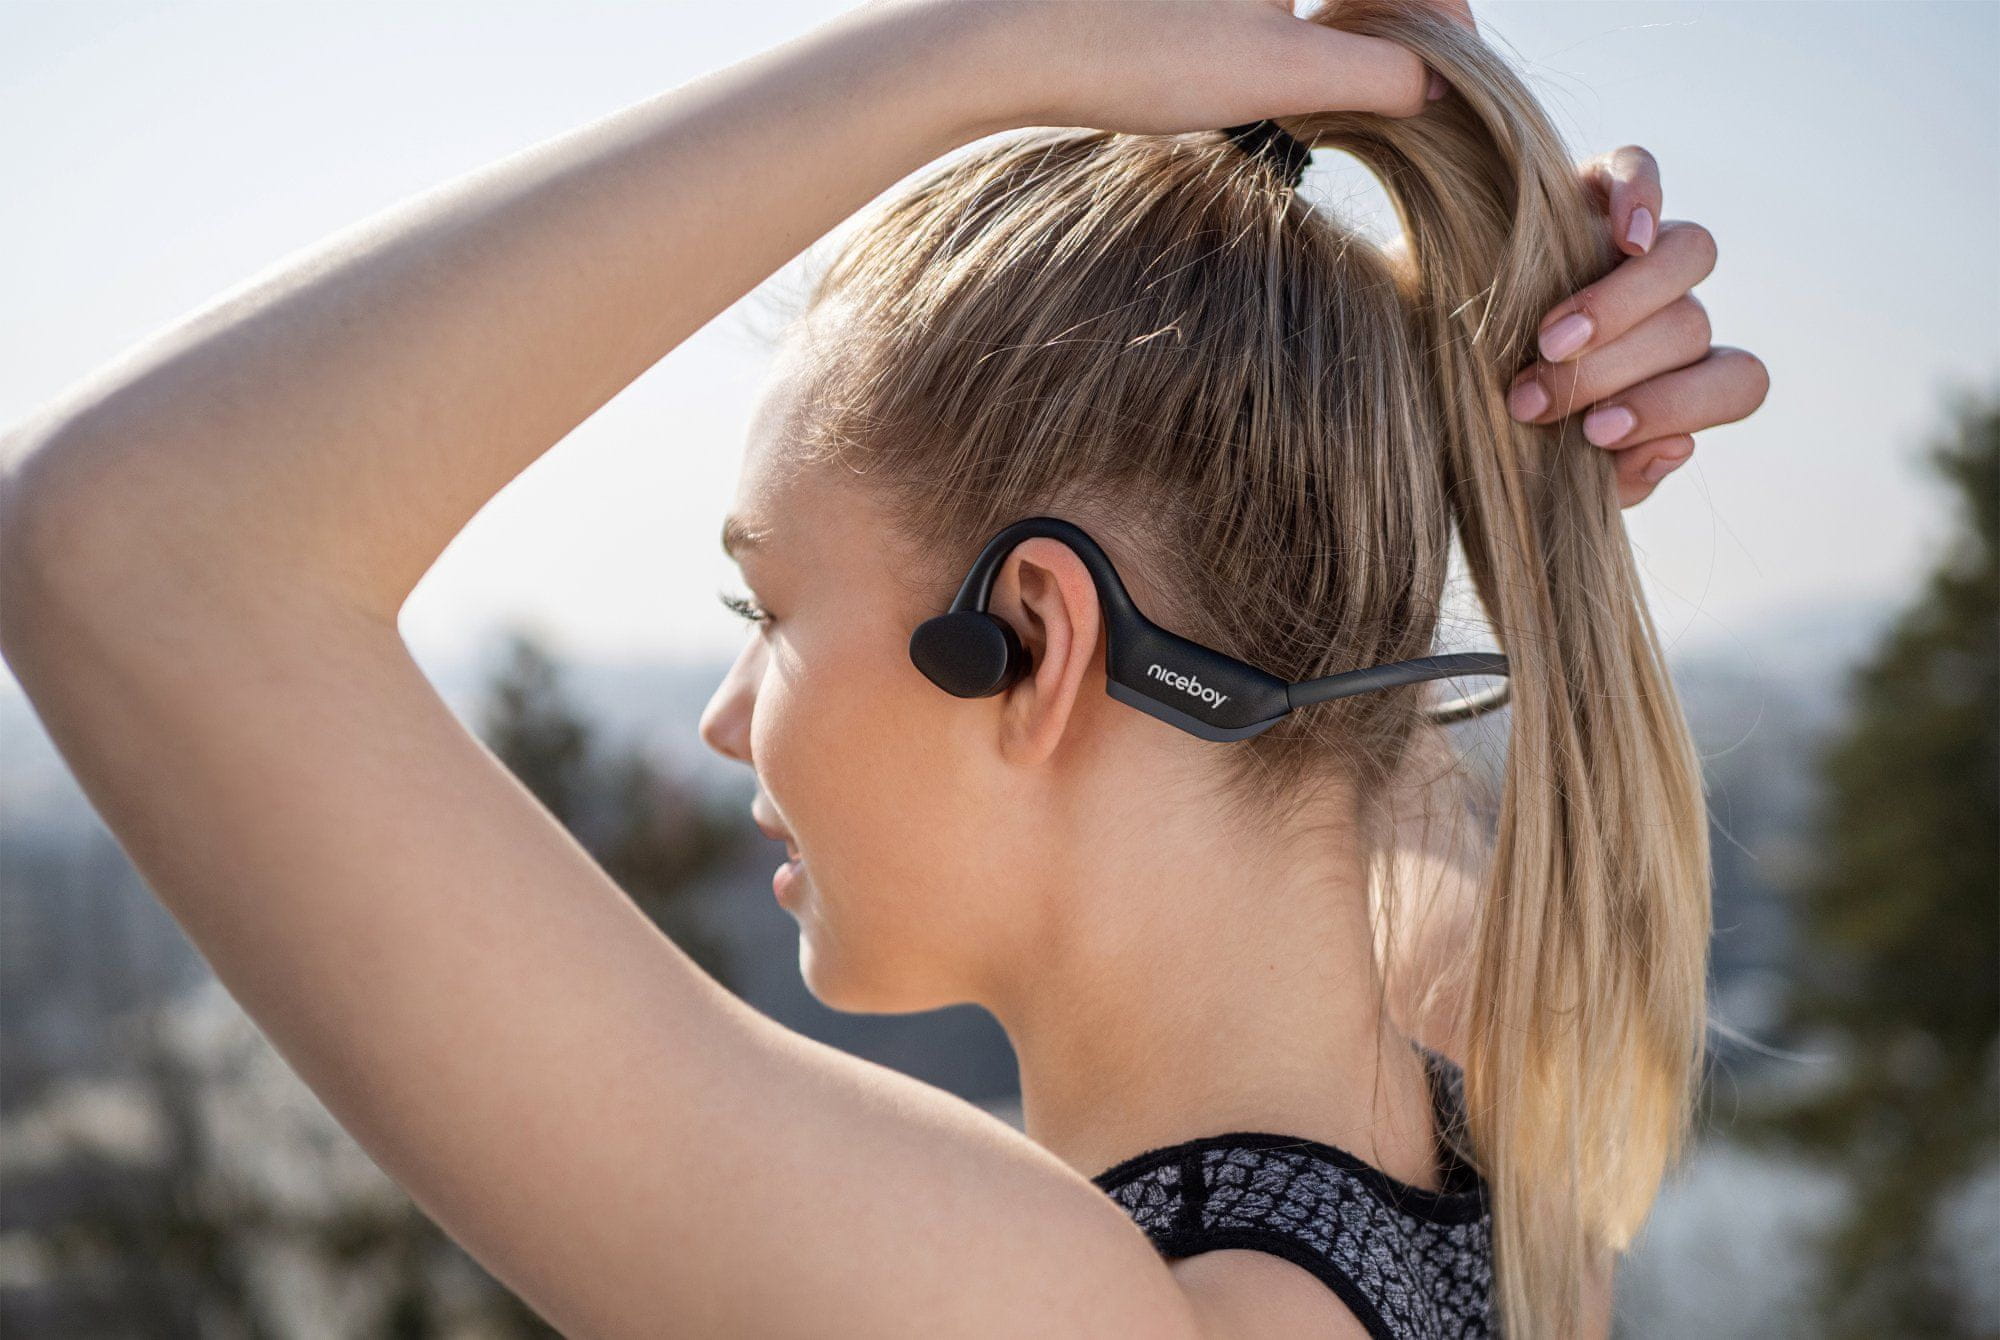  Bluetooth 5.0 sluchátka sportovní niceboy hive bones 2 výborný zvuk lehounká chráněná proti vodě ip55 vhodná pro sportování výdrž 8 h na nabití aac kodek a2dp profil 